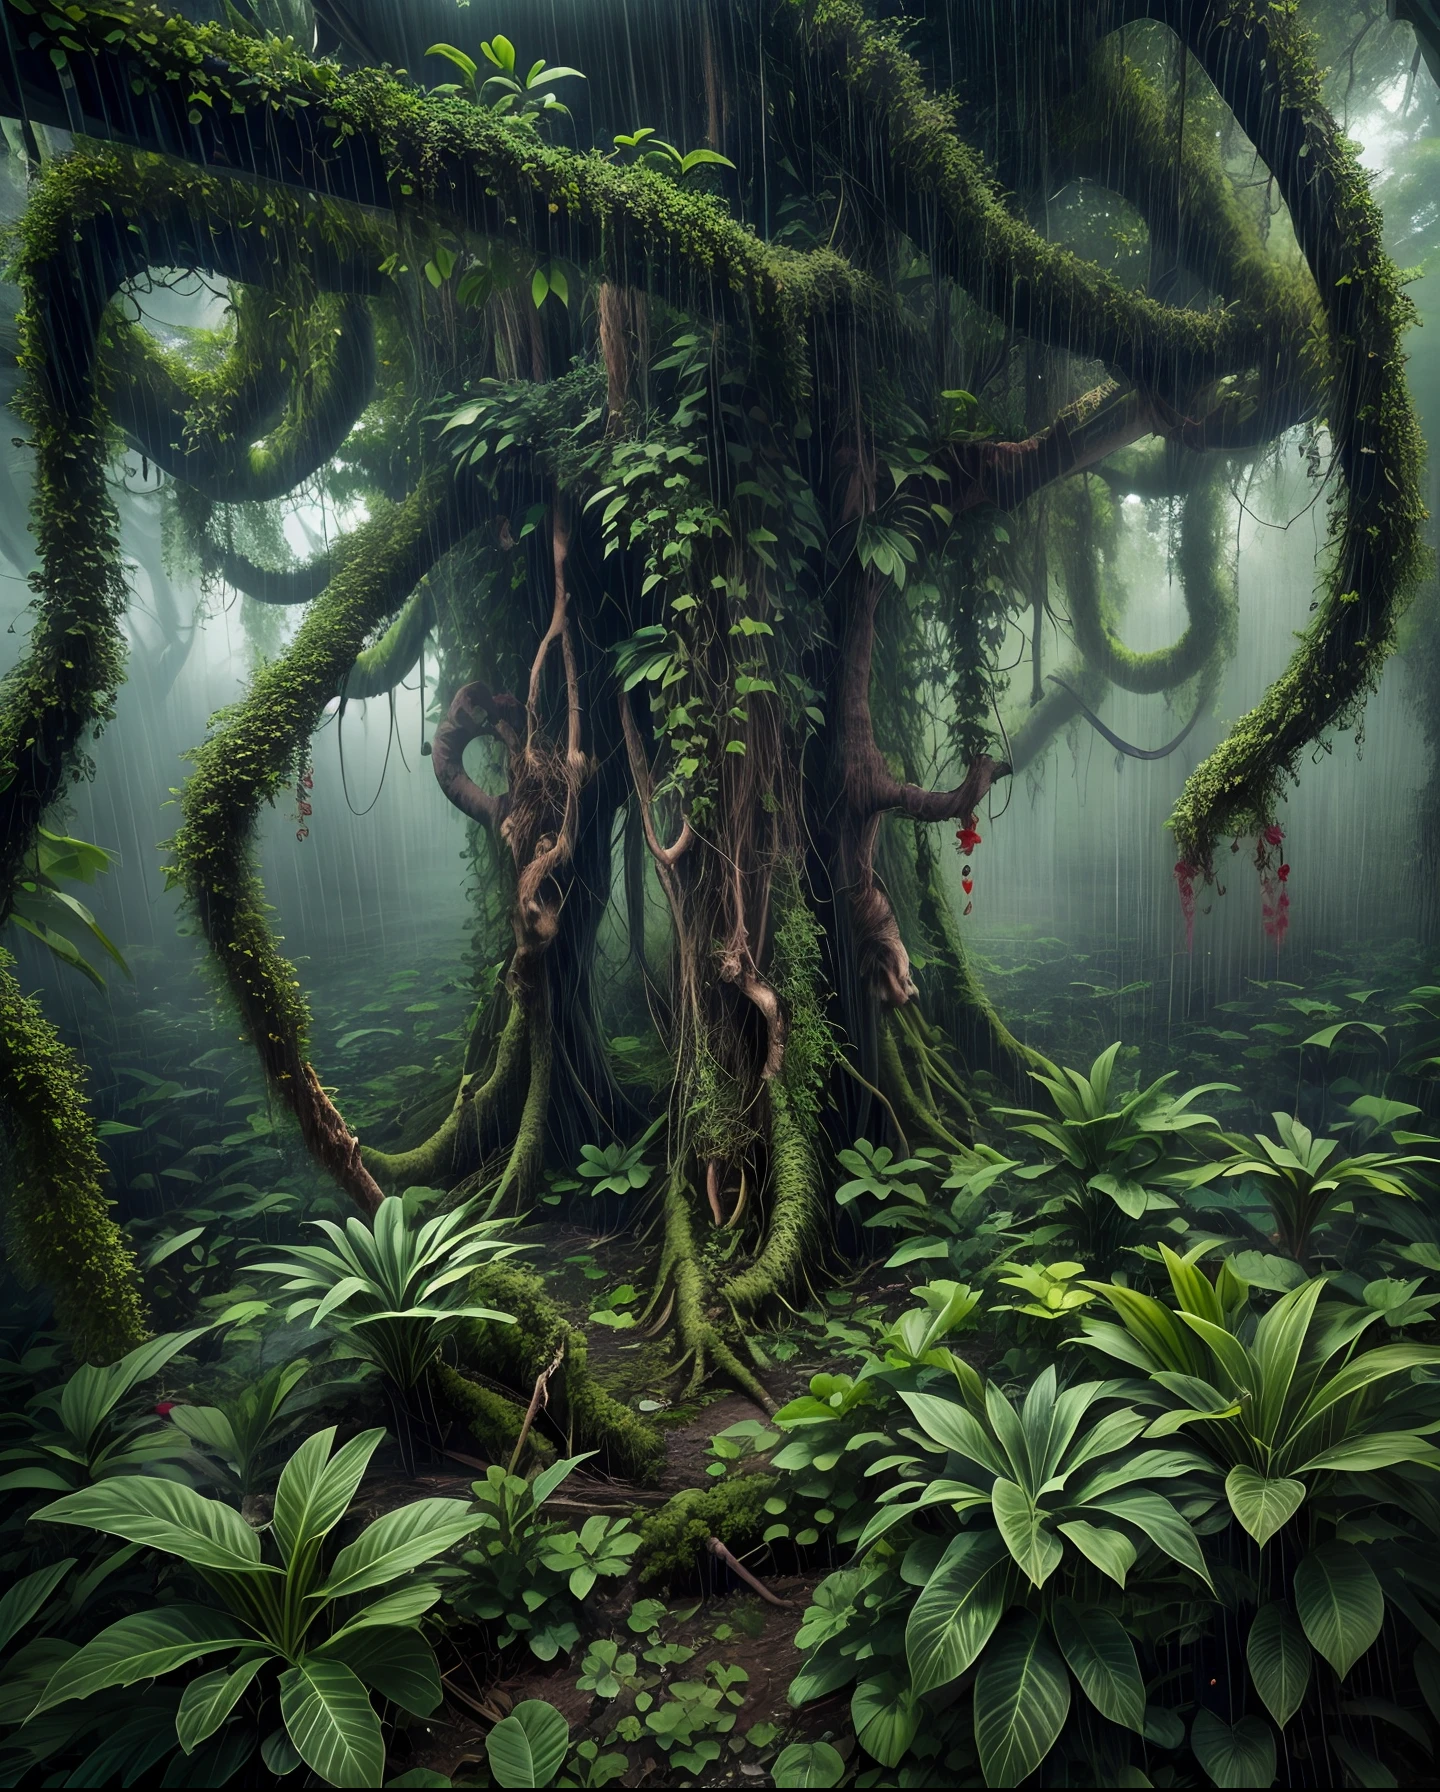 倾盆大雨中的危险奇幻丛林, 扭曲的藤蔓, 食肉植物, 和潜伏的生物, 气氛紧张, 使用广角镜头和高 ISO 设置进行拍摄